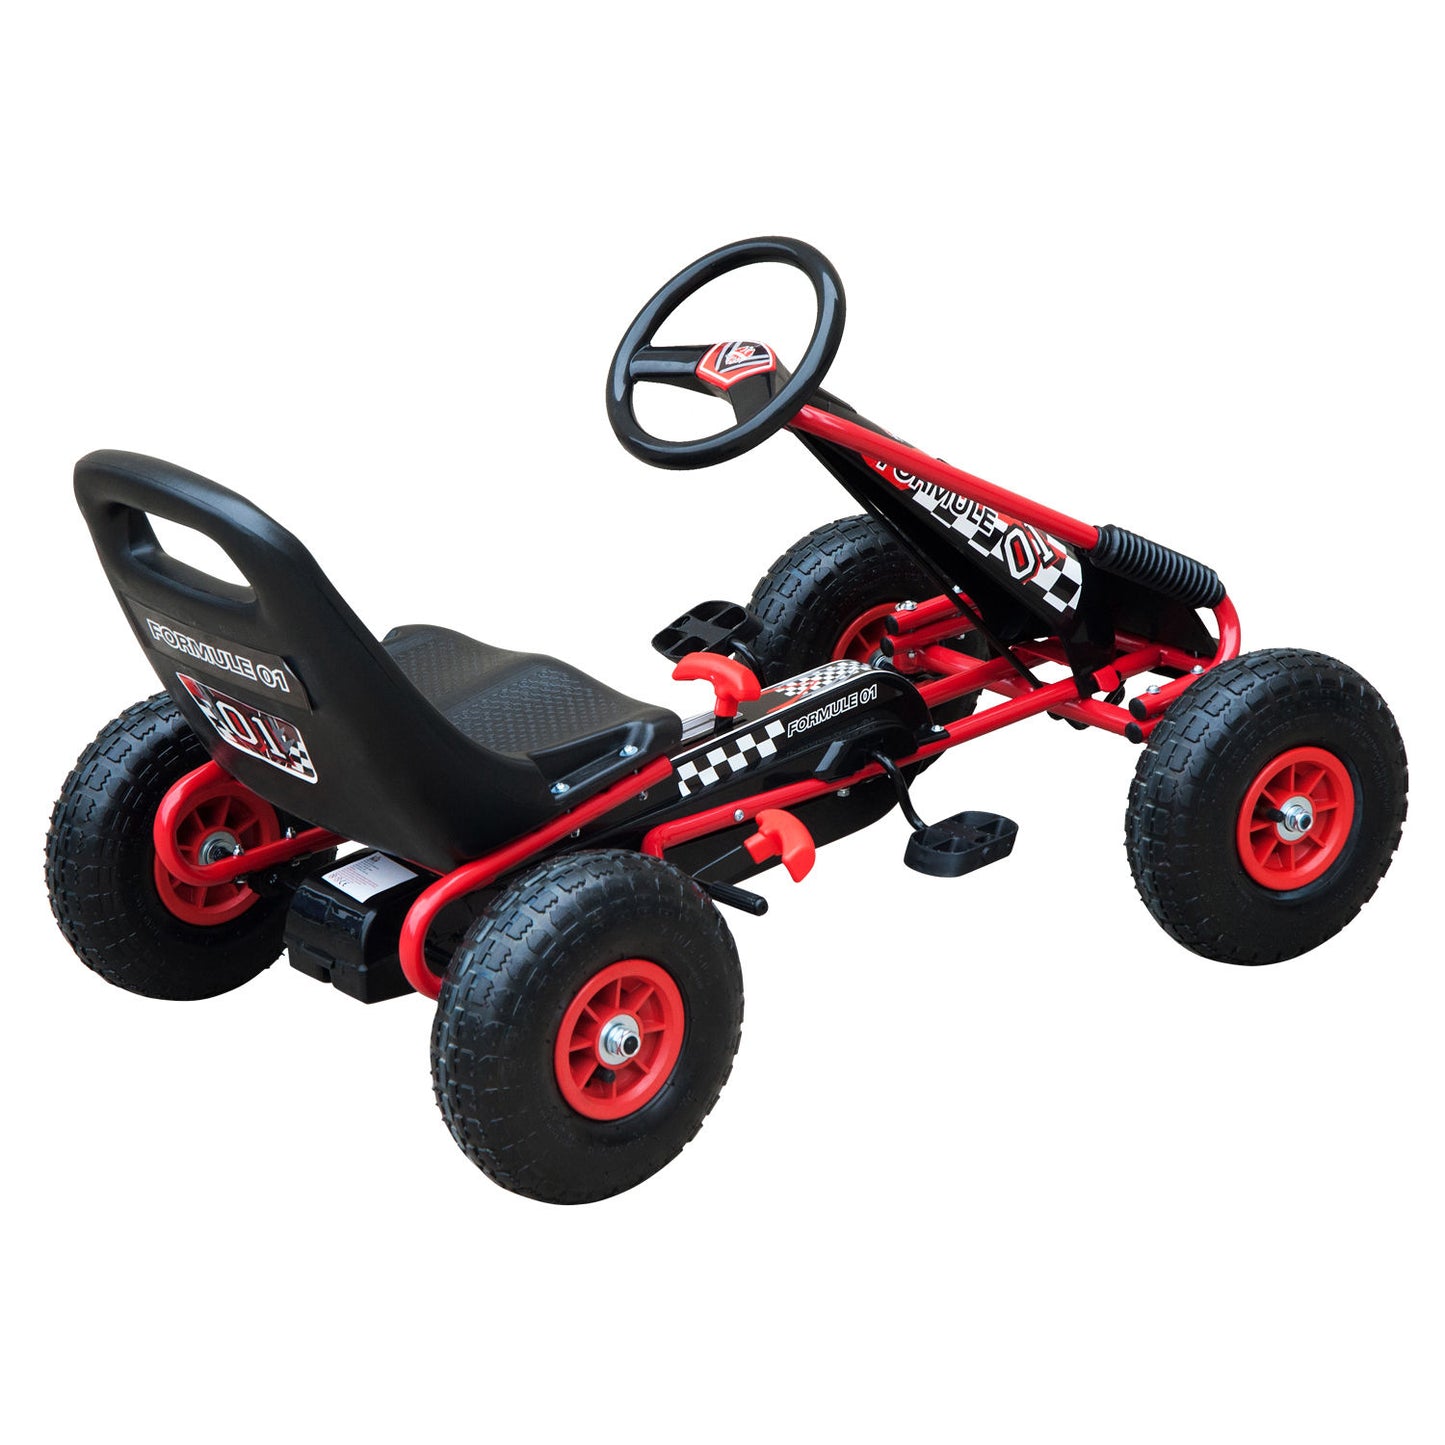 HOMCOM Pedal Go Kart W/EVA Wheels-Red/Black